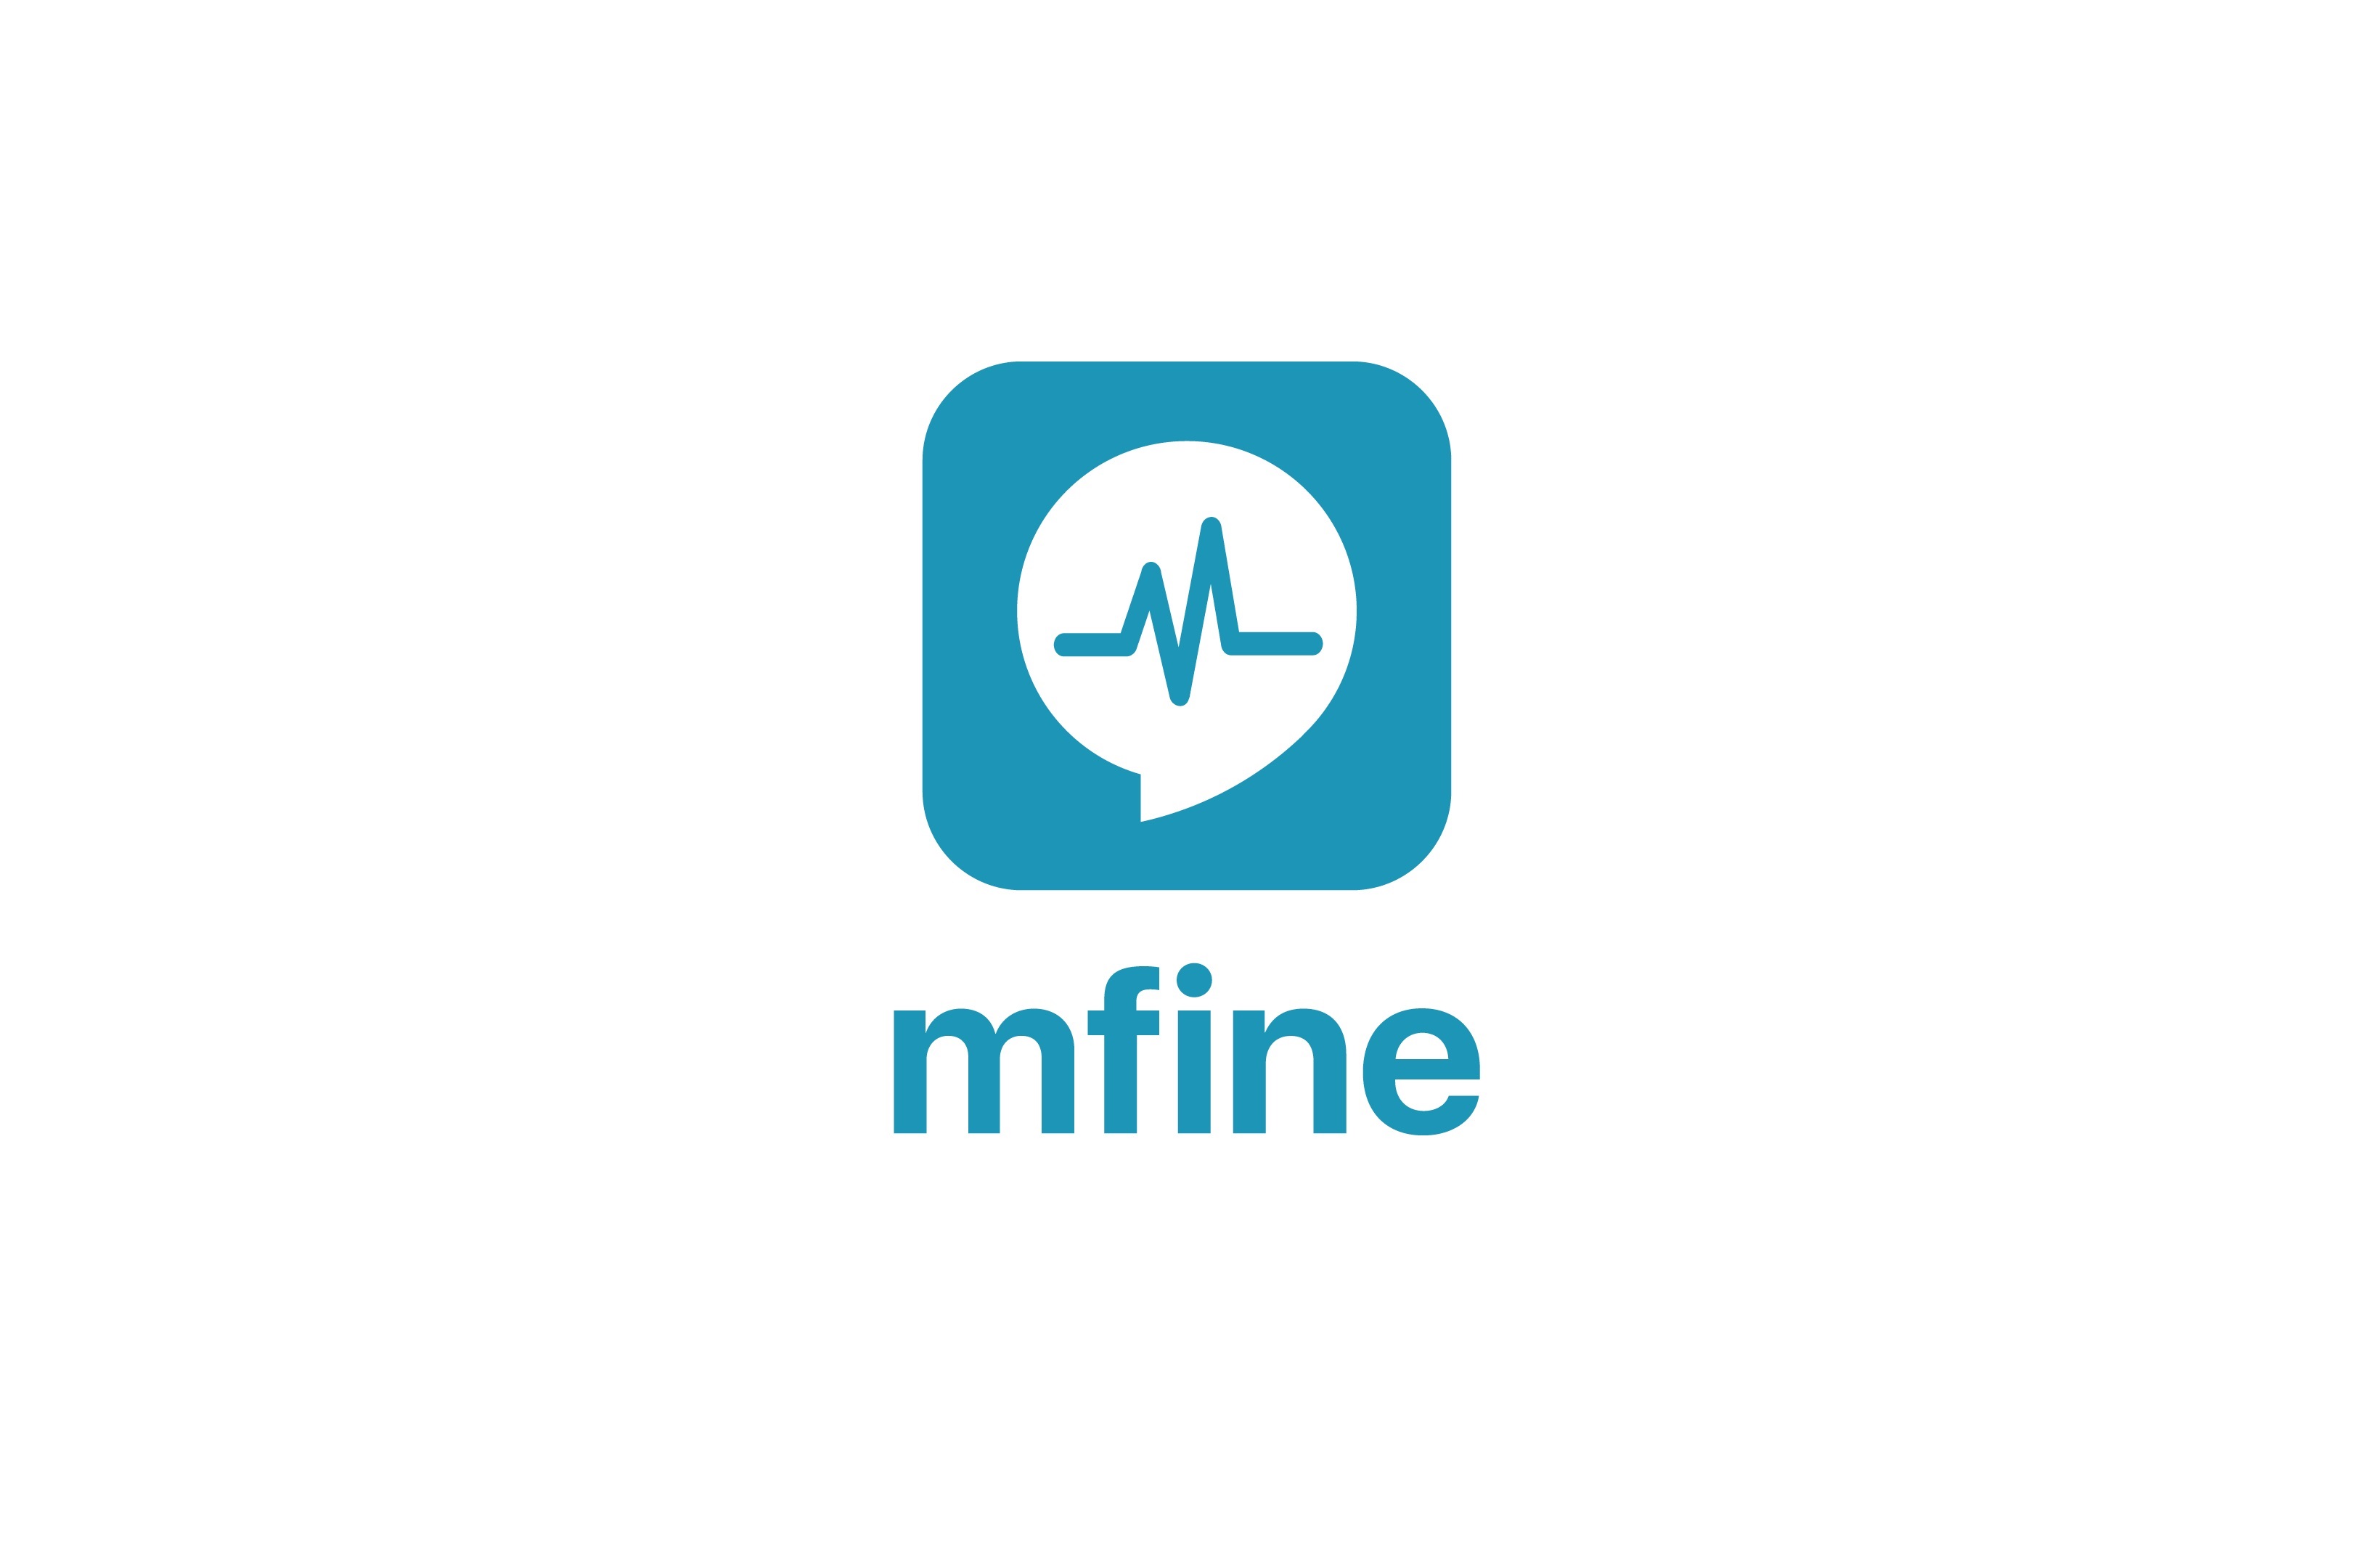 mfine - Online Doctor Consultation 